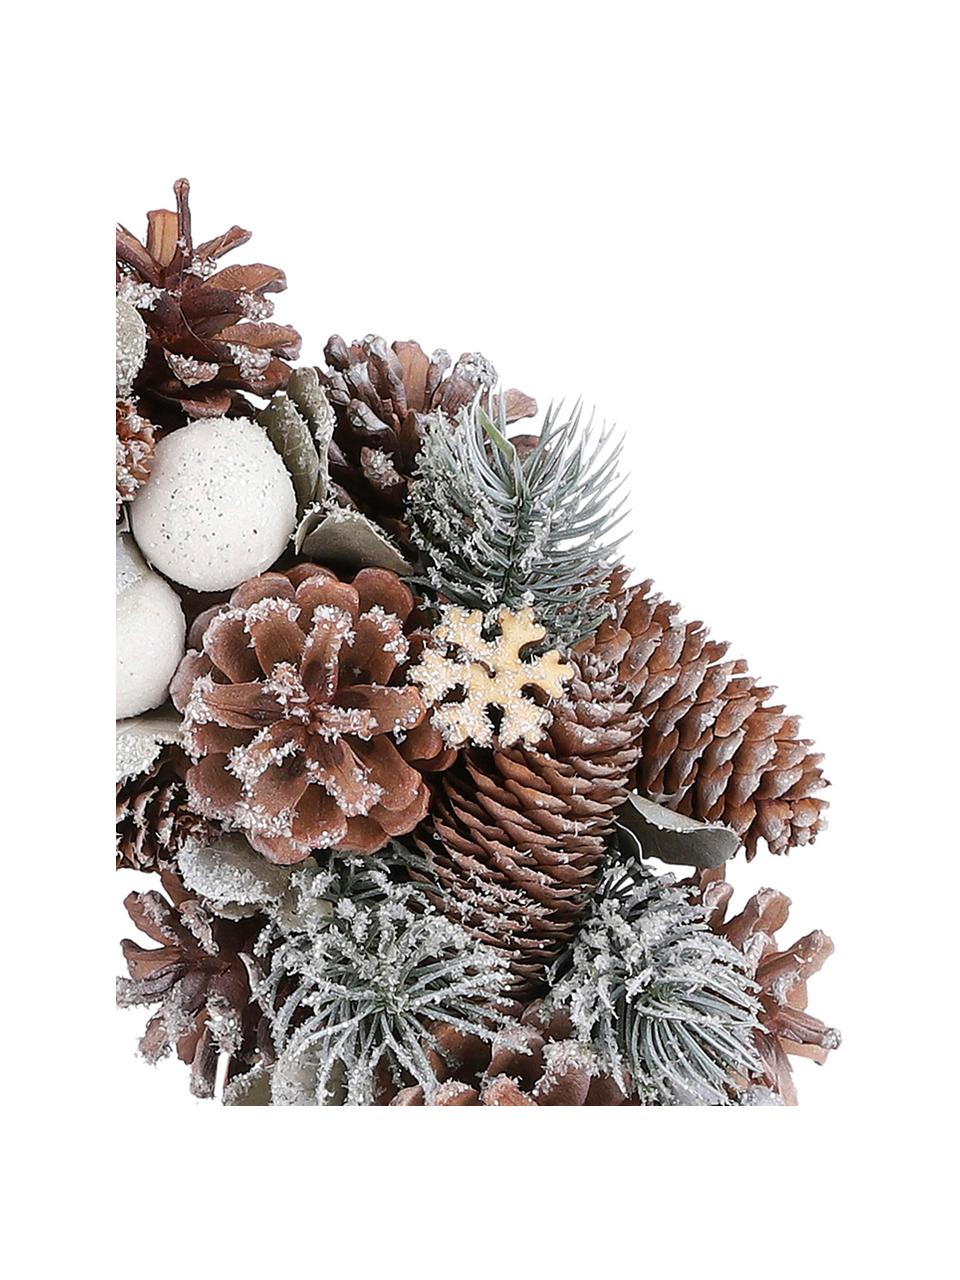 Kerstkrans Nicola, Natuurlijke vezels, Bruin, wit, groen, Ø 34 cm, H 9 cm